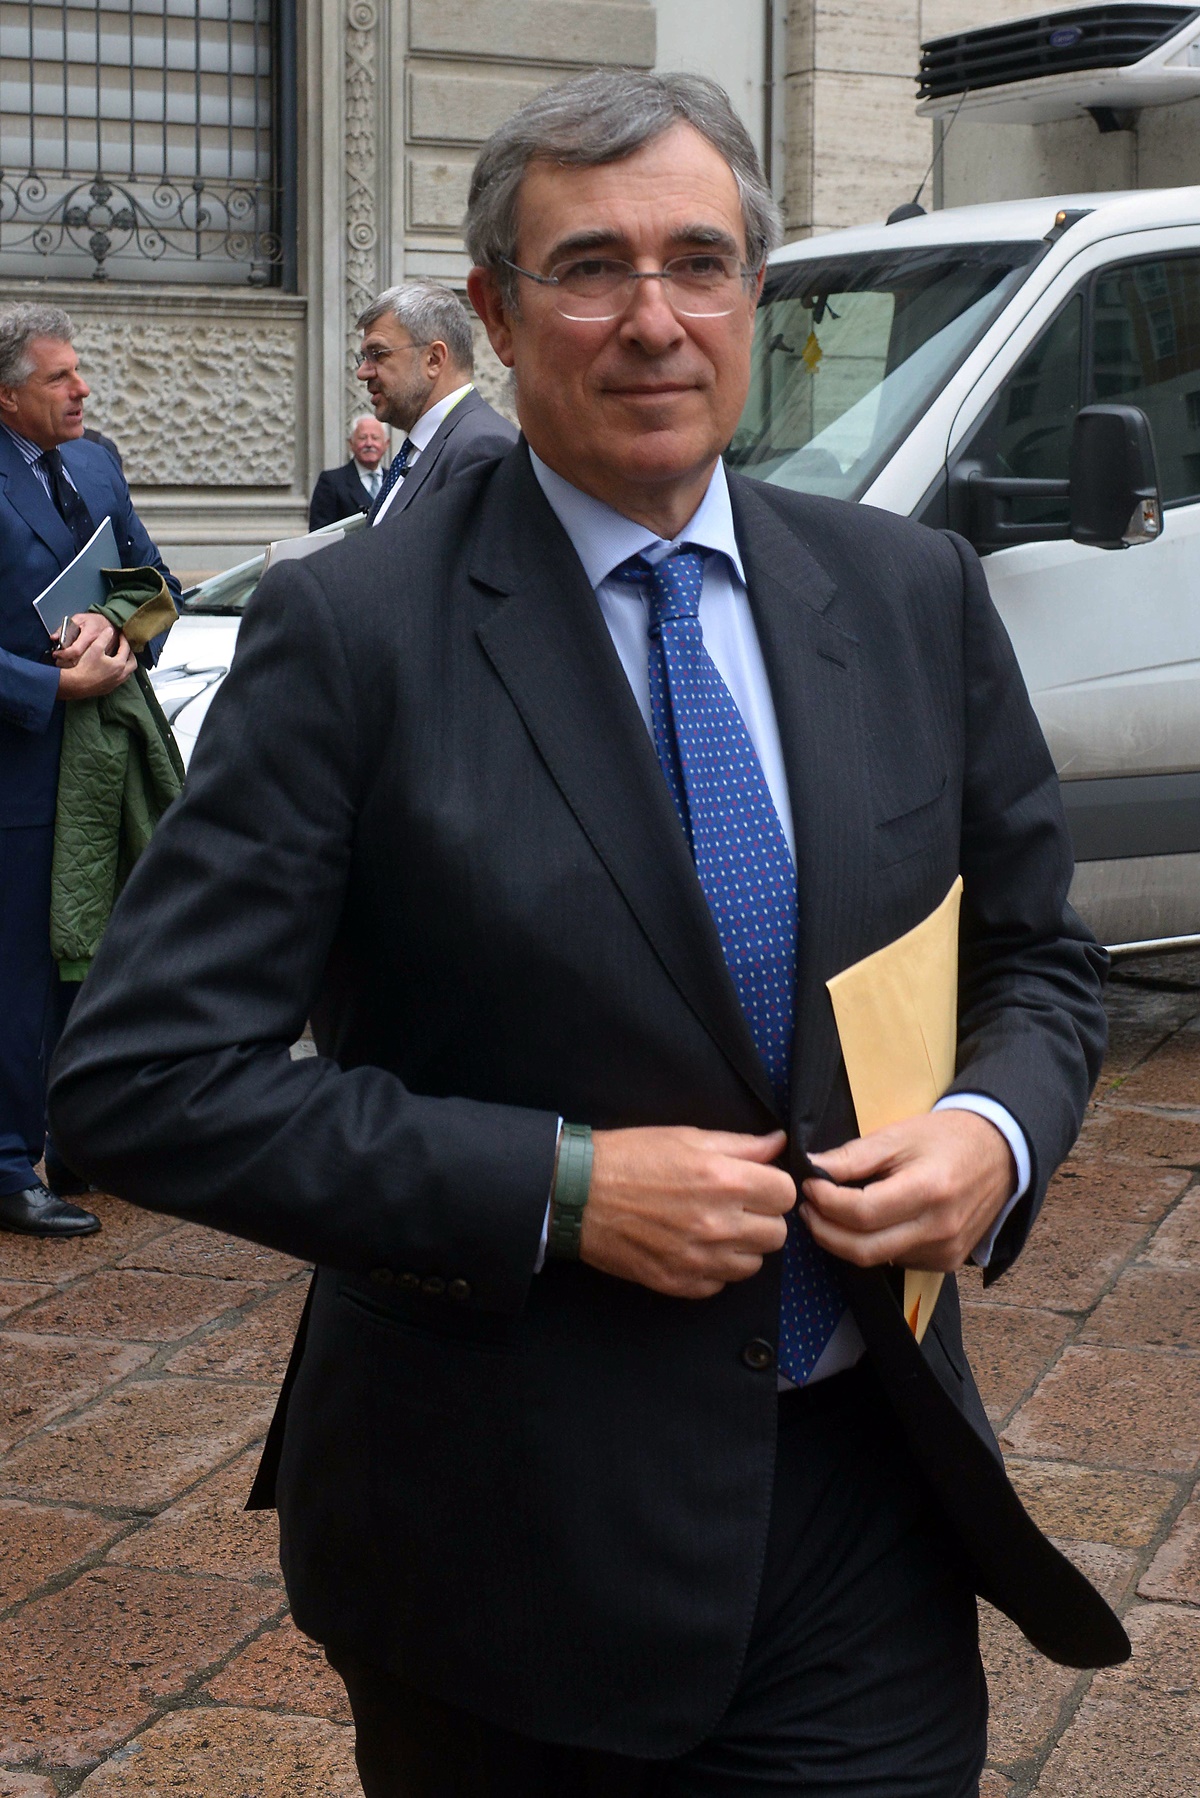 Carlo Fratta Pasini